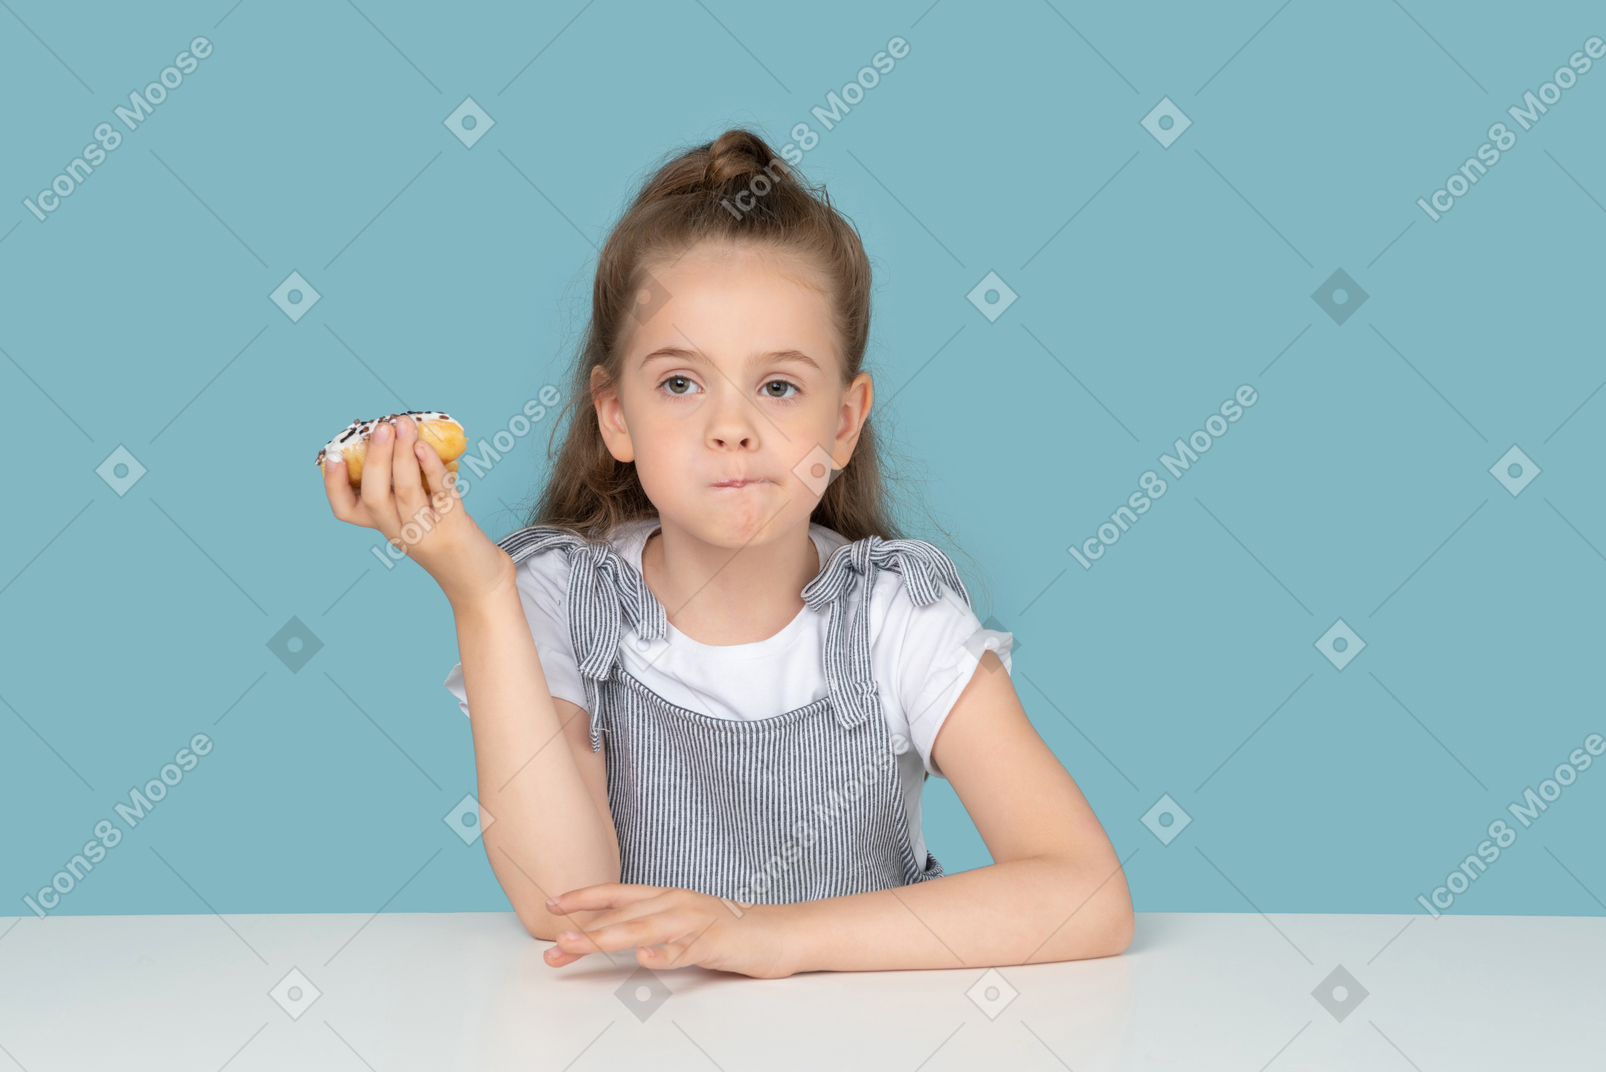 ドーナツを持って考えているかわいい女の子